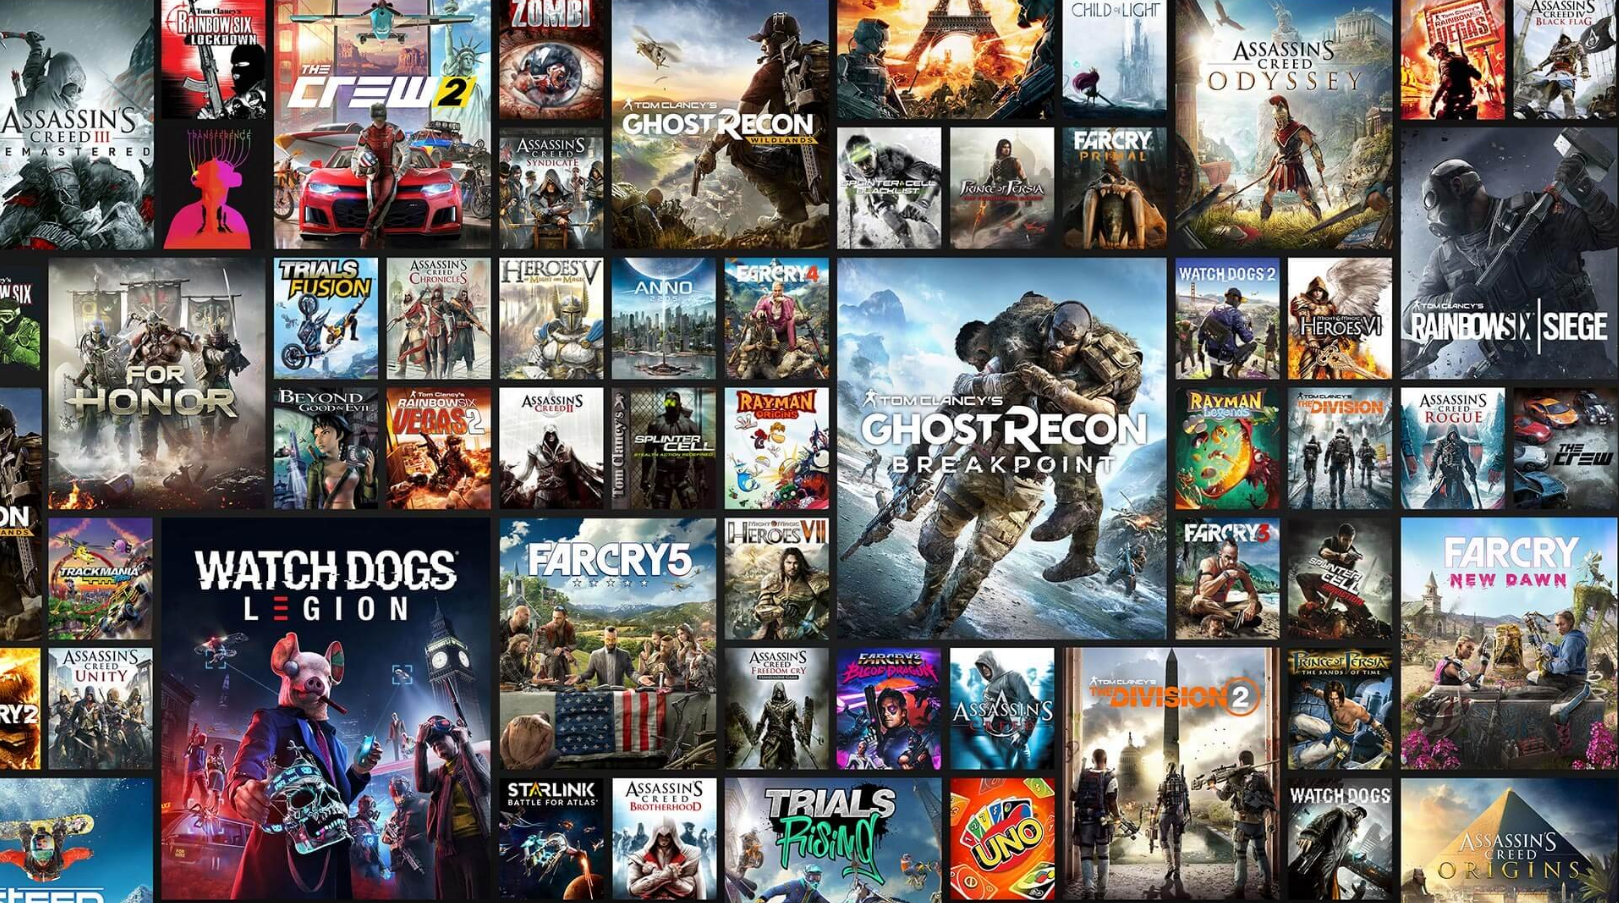 Ubisoft теряет прибыль, но рада успехам Assassin’s Creed и Rainbow Six Siege: главное из отчета компании Ubisoft, годом, К тому же, дохода, провели, 55 миллионов, Siege, собрала, больше, В финансовом, игроков, Rainbow, рекорд, ежемесячных, активных, пользователей, и побила, несмотря, возраст, на свой